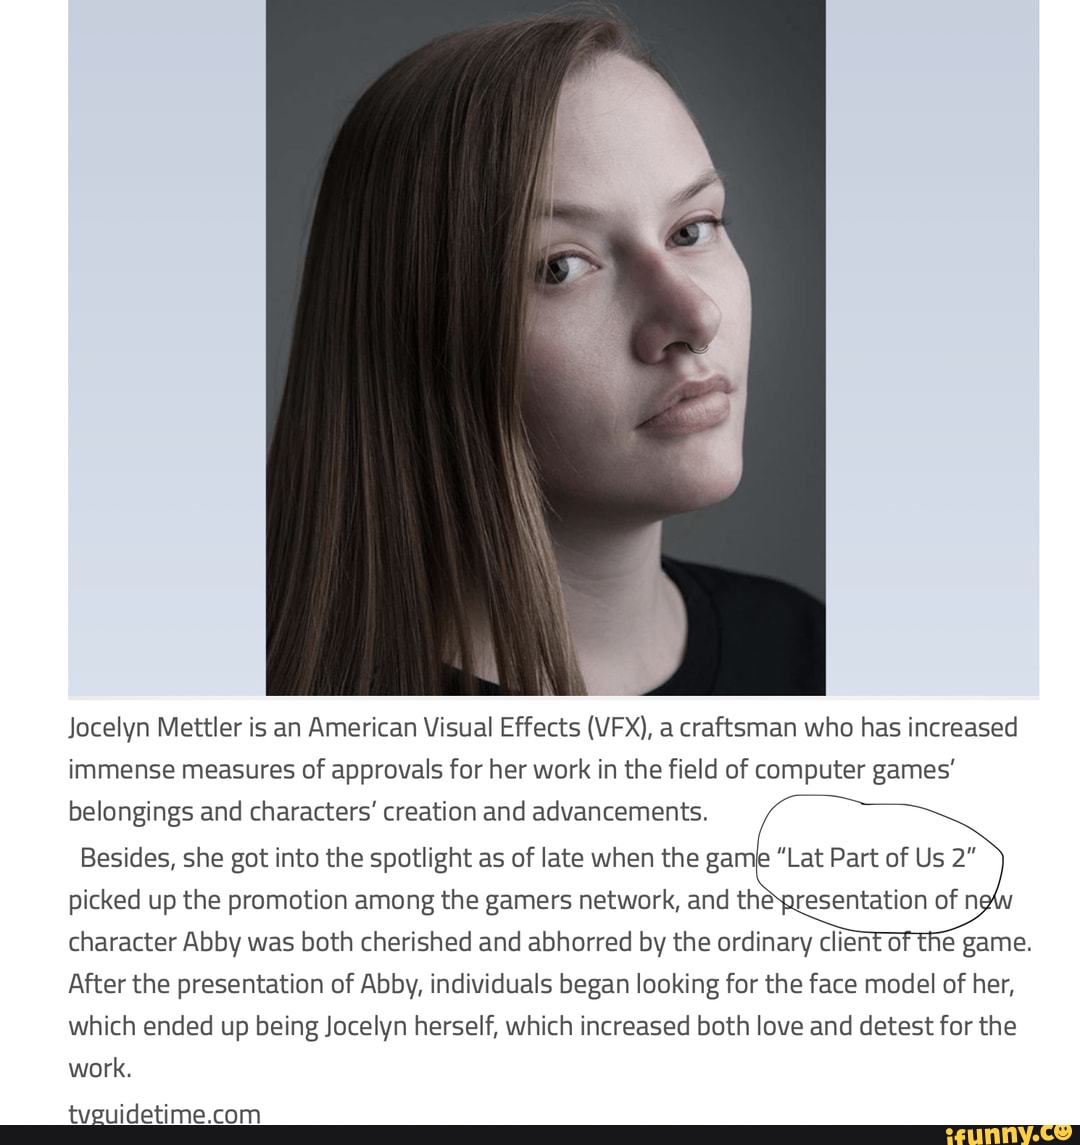 Jocelyn Mettler, the face model of Abby in 'The Last of Us Part II